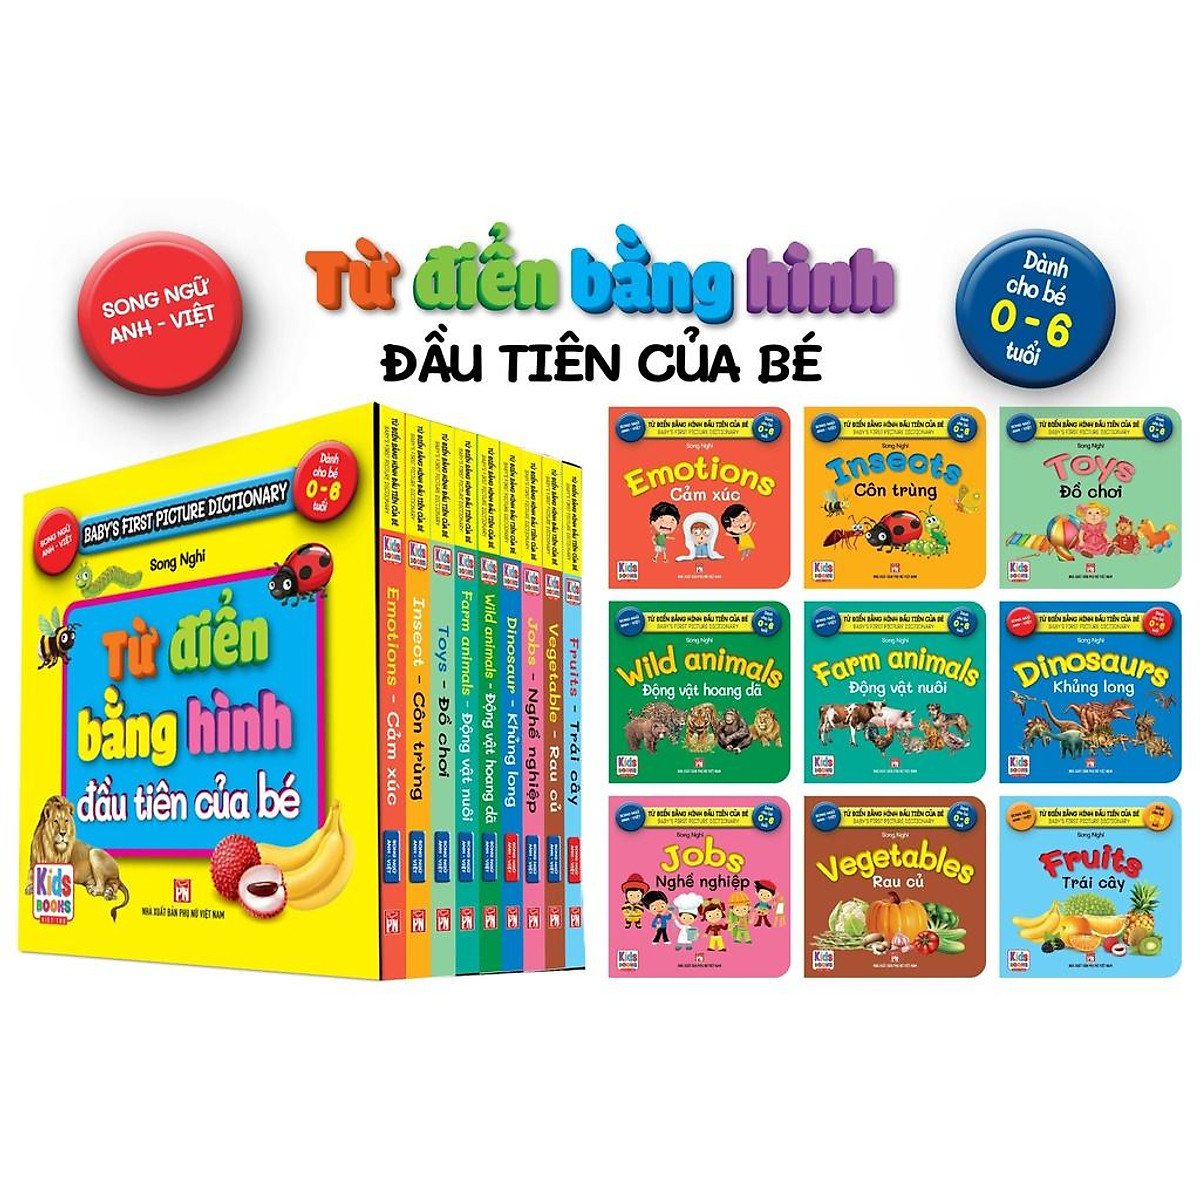 Sách - Trọn Bộ 9 Cuốn Từ Điển Bằng Hình Đầu Tiên Của Bé Từ 0-6 tuổi - Song Ngữ Anh- Việt (Các trang đều là )